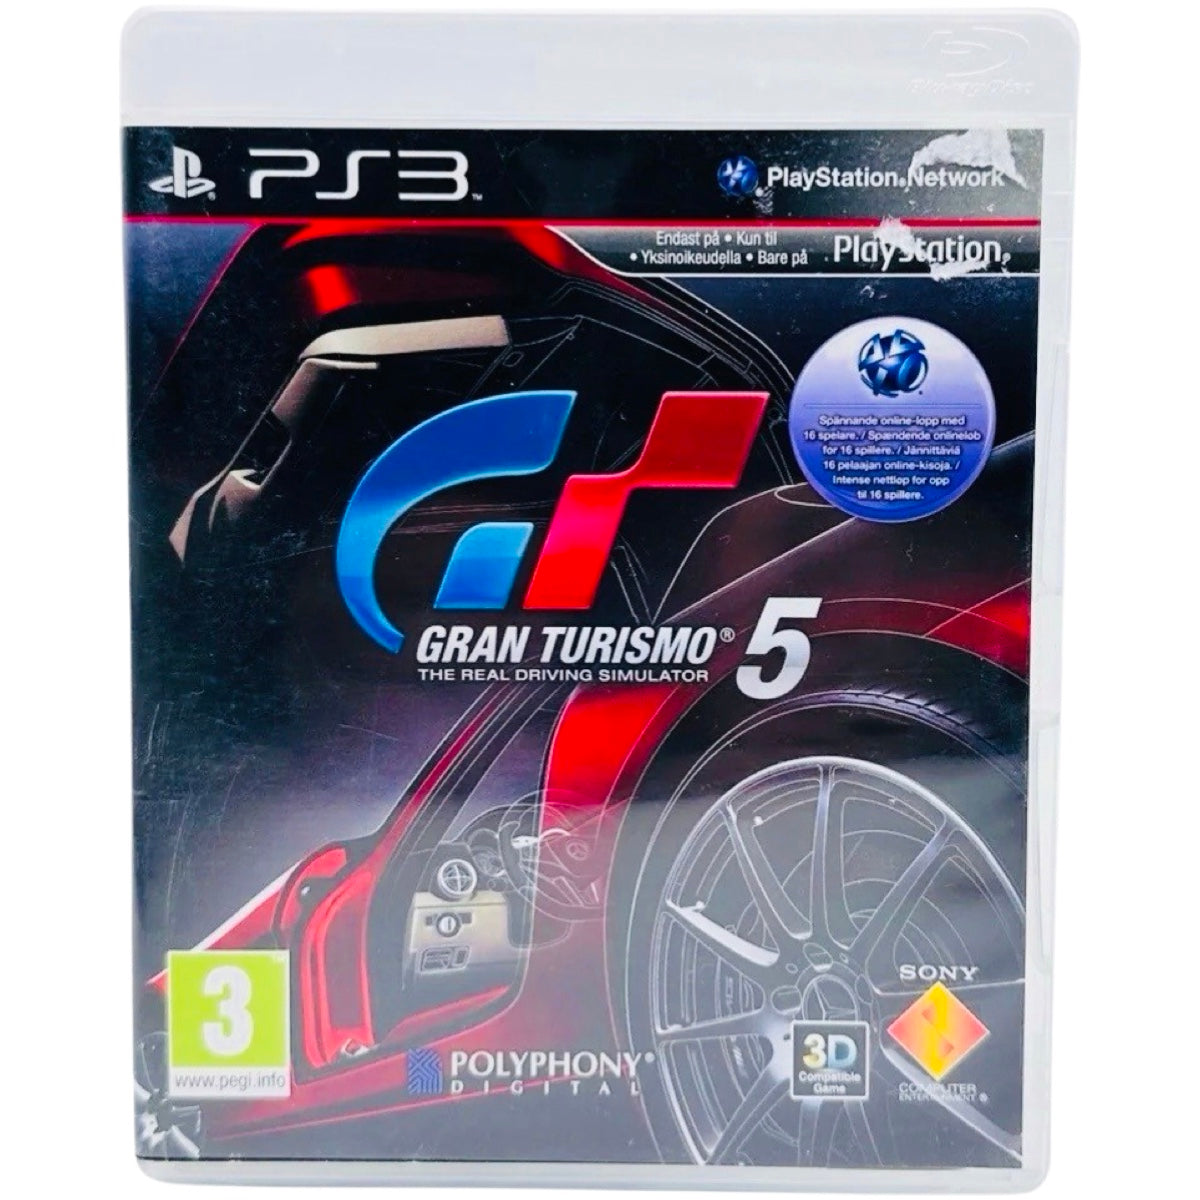 PS3: Gran Turismo 5